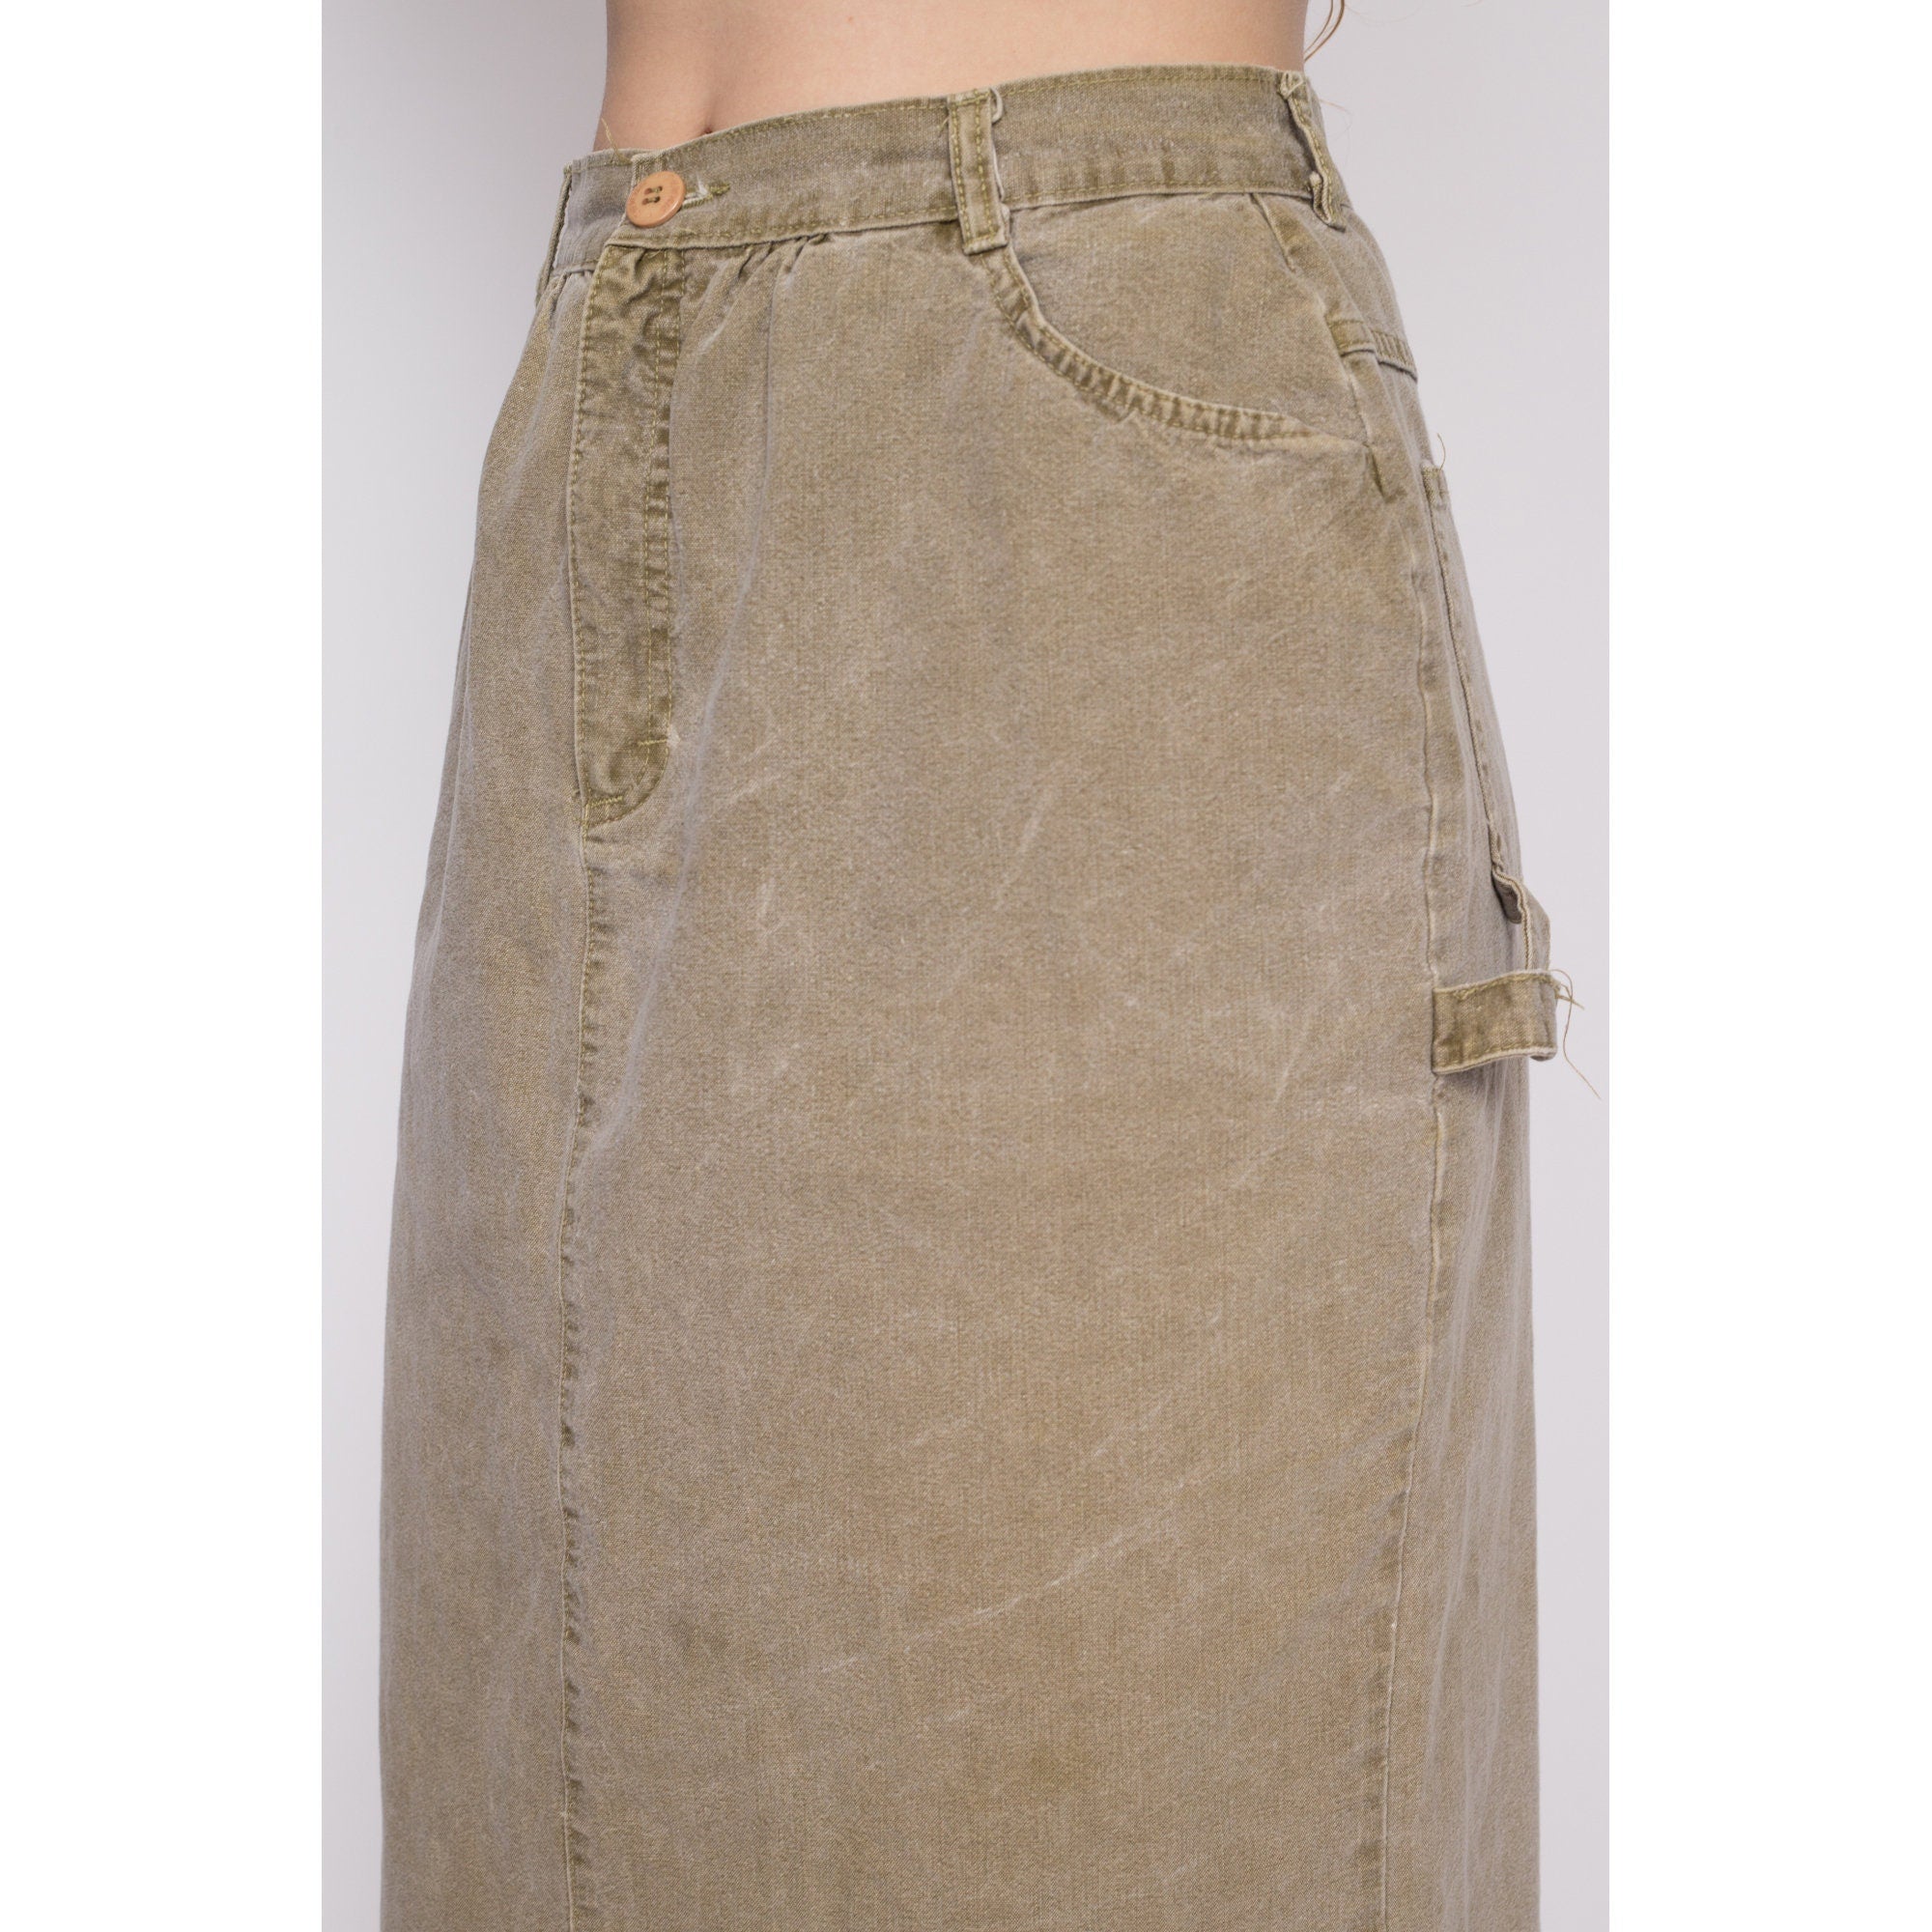 90s Olive Khaki Midi Carpenter Skirt - Medium, 28